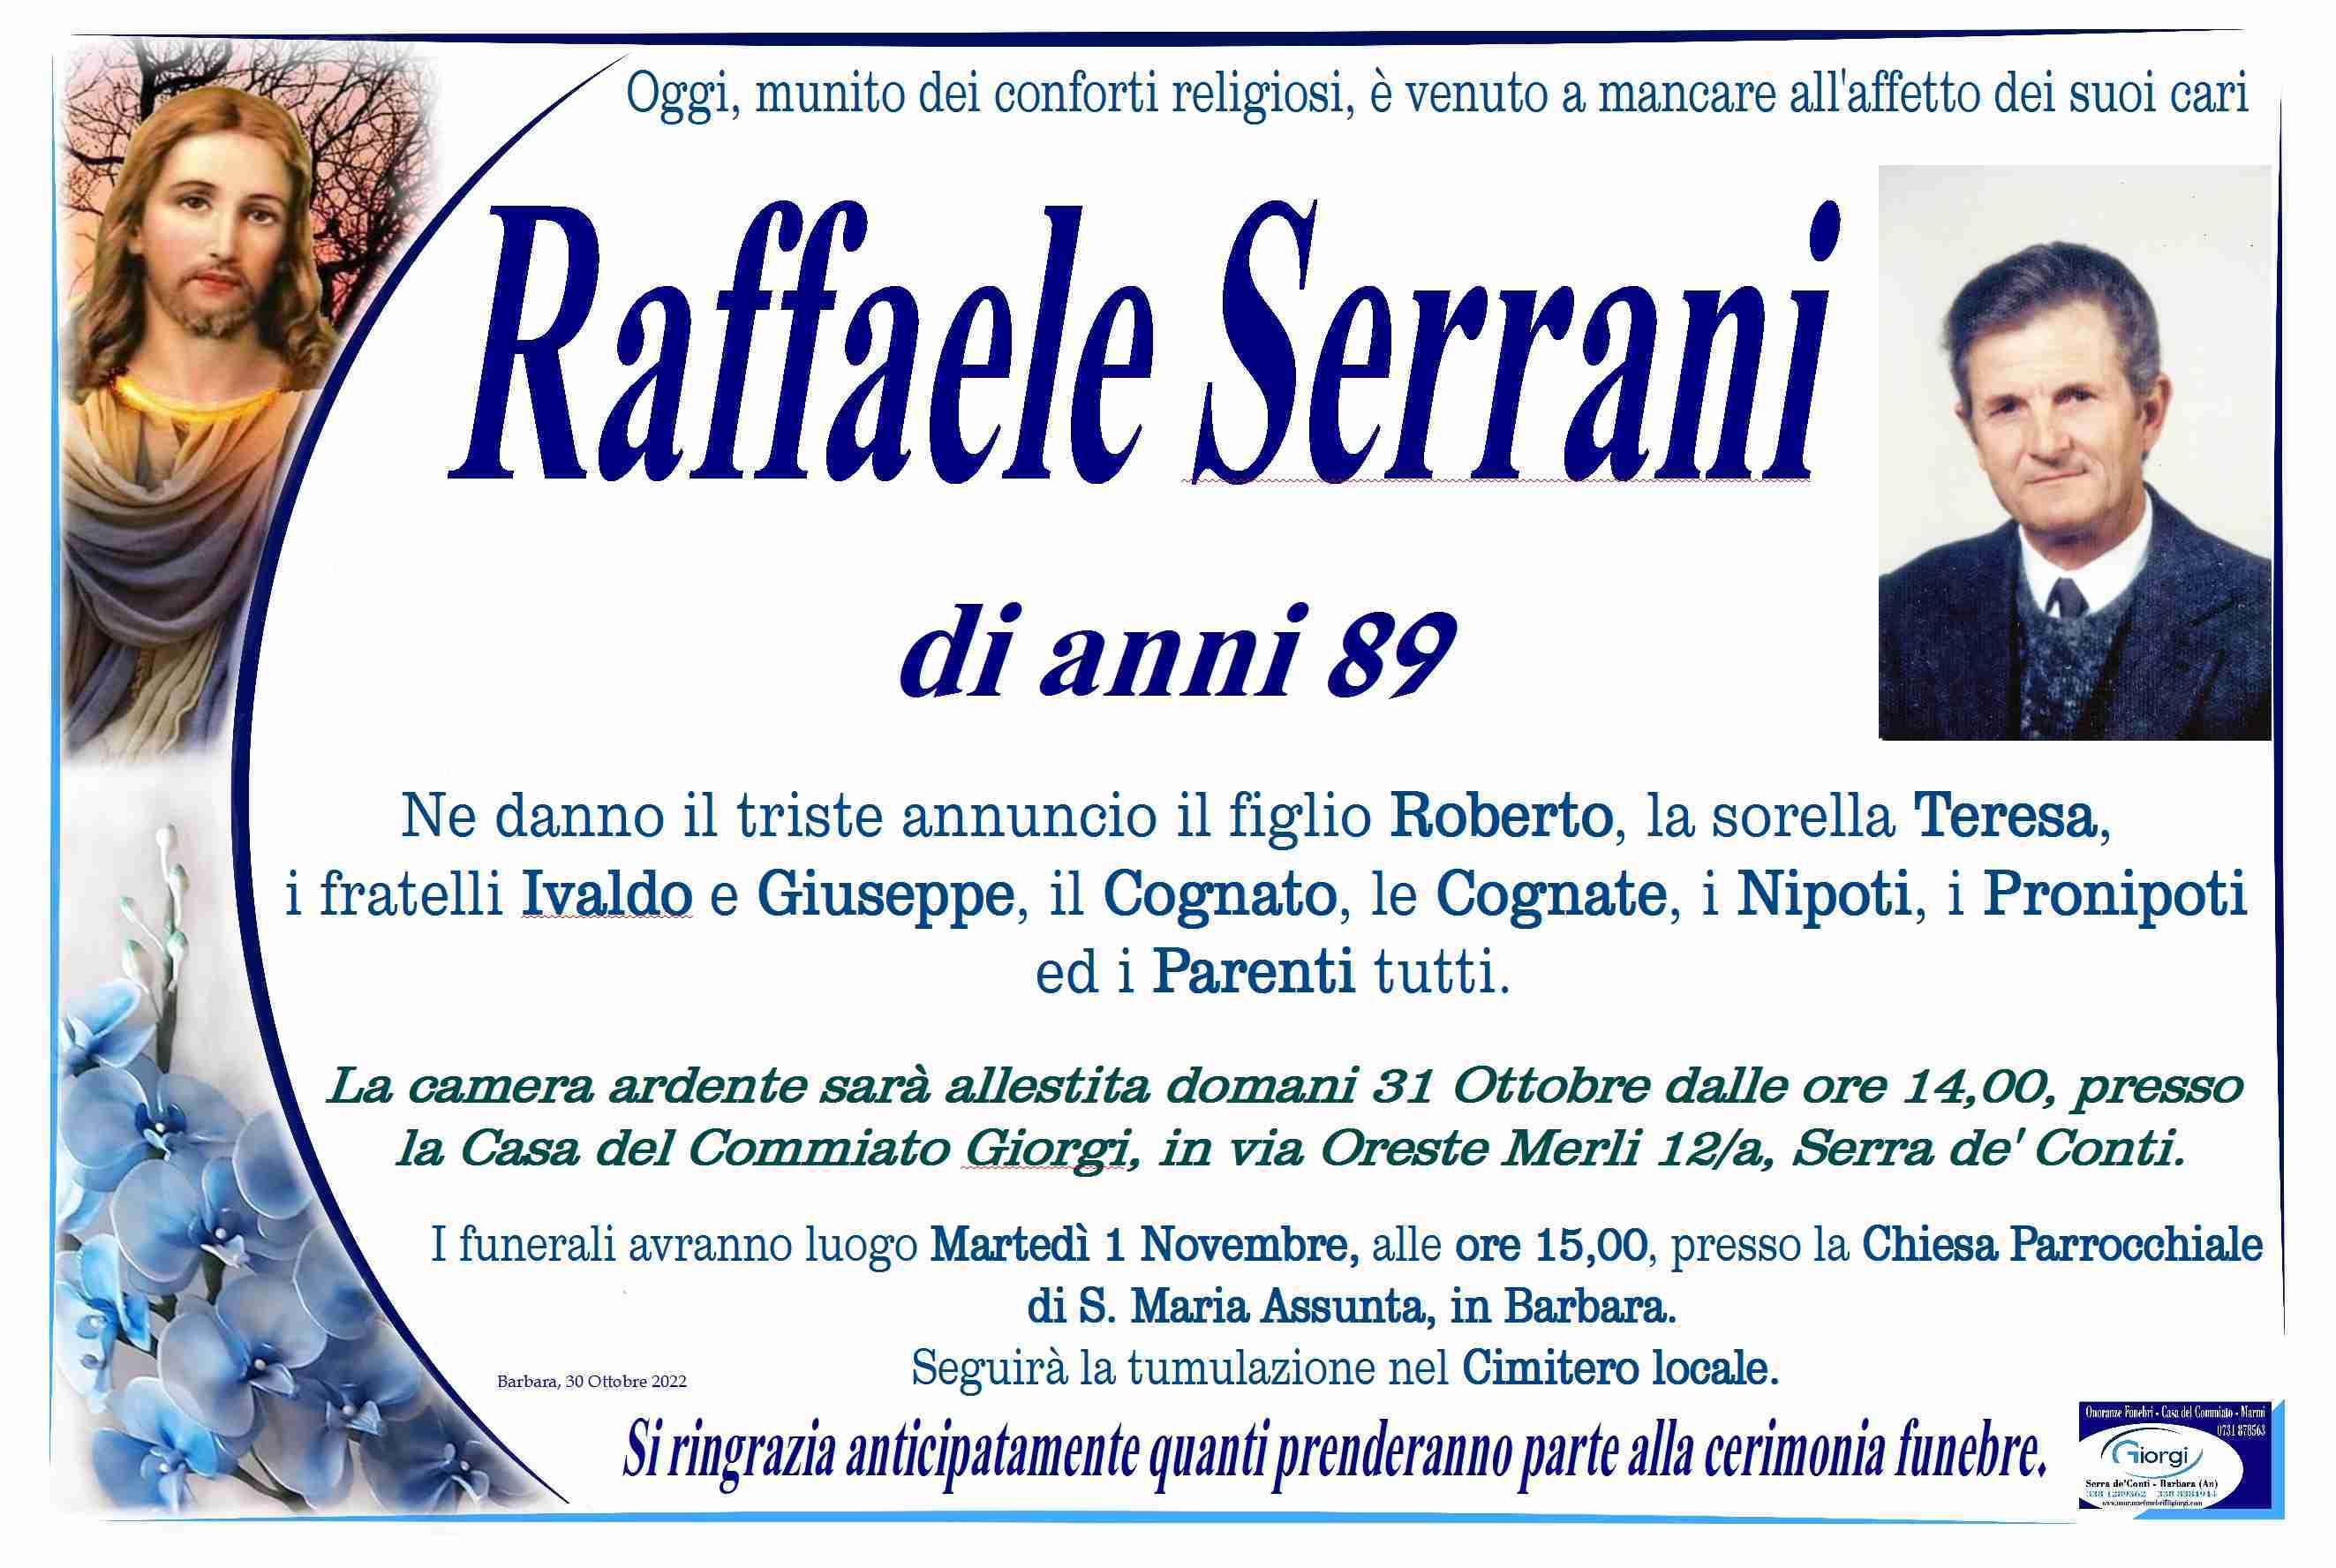 Raffaele Serrani